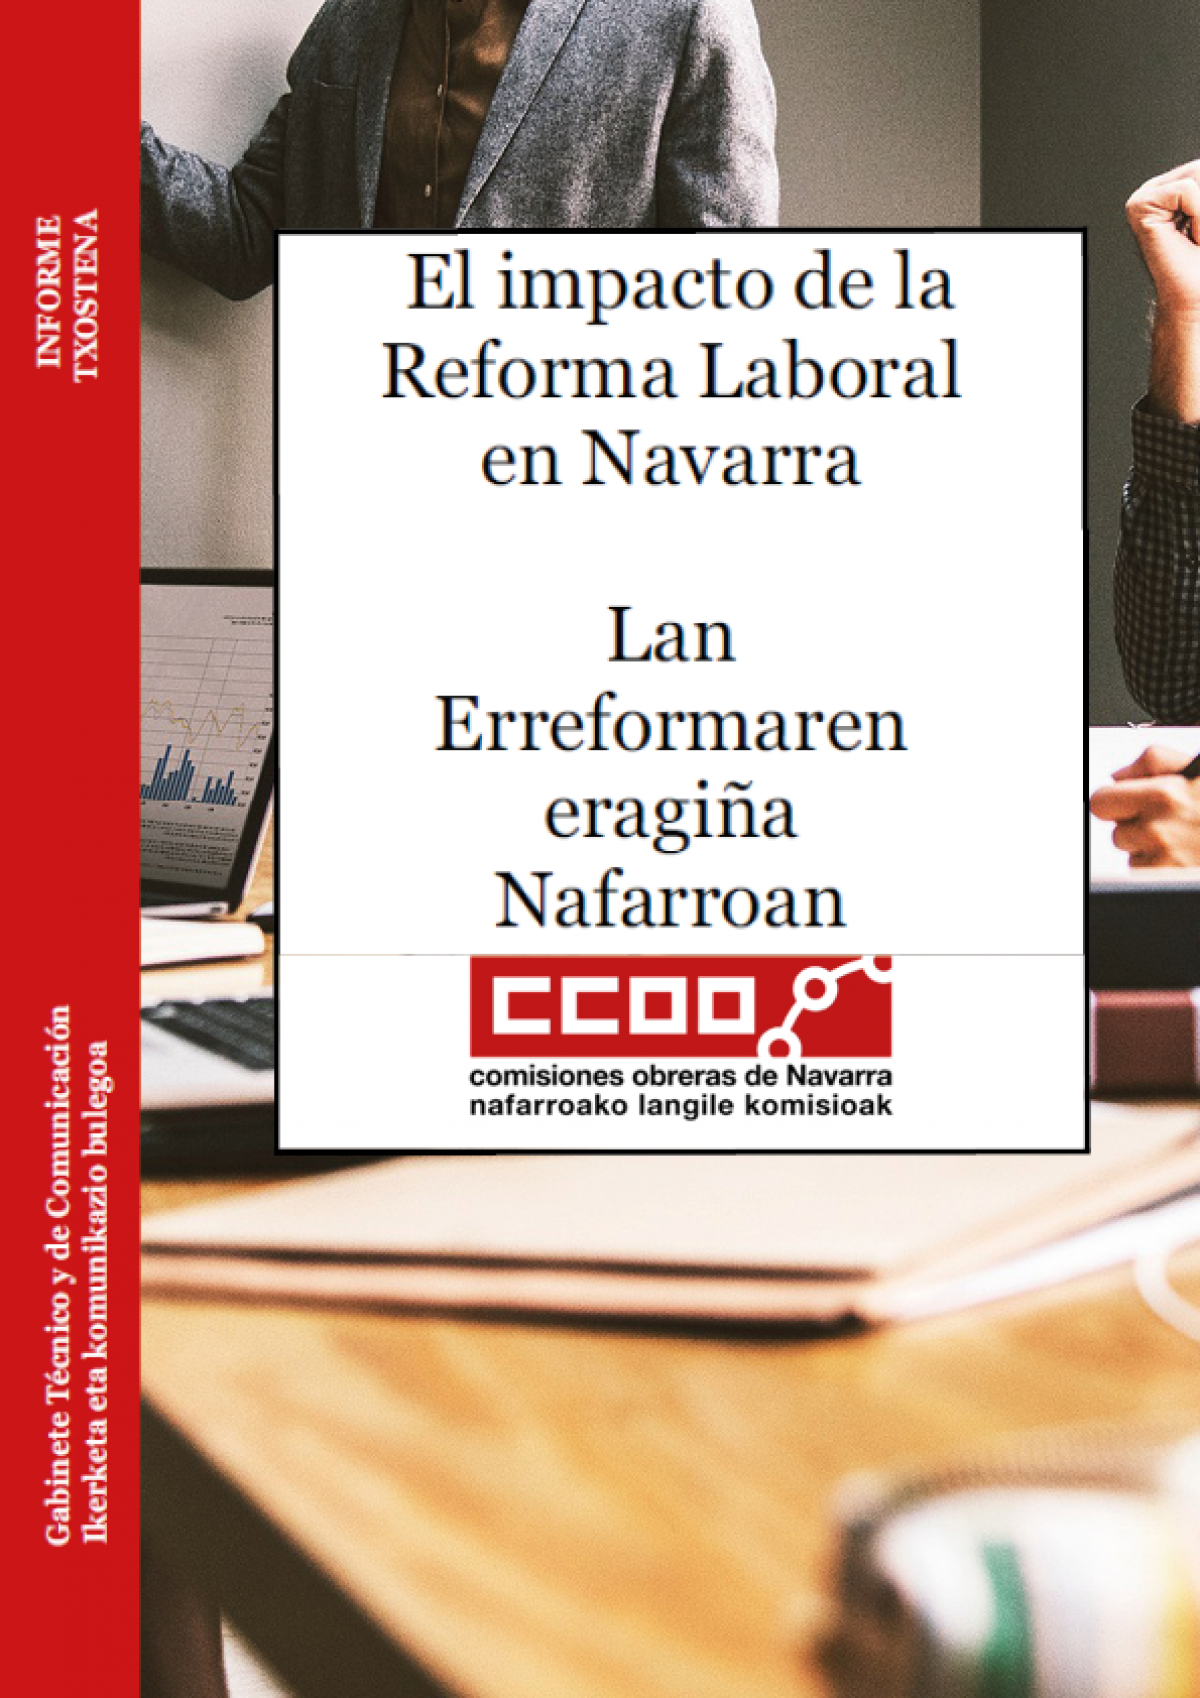 El impacto de la reforma laboral en Navarra